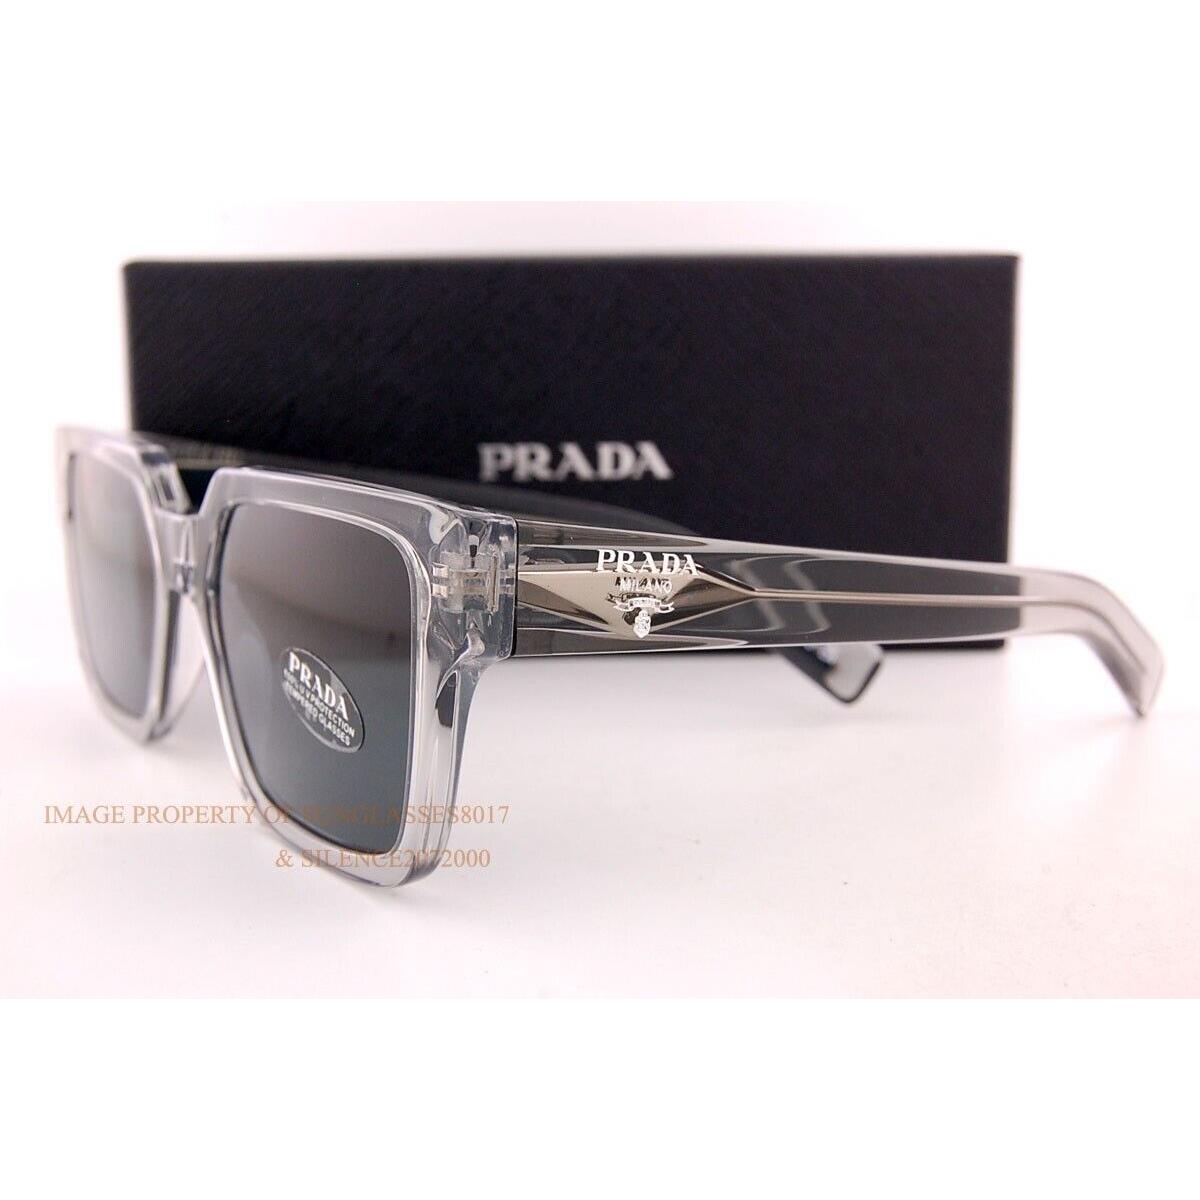 Prada sunglasses  - Grey Transparent Frame, Gray Lens 1